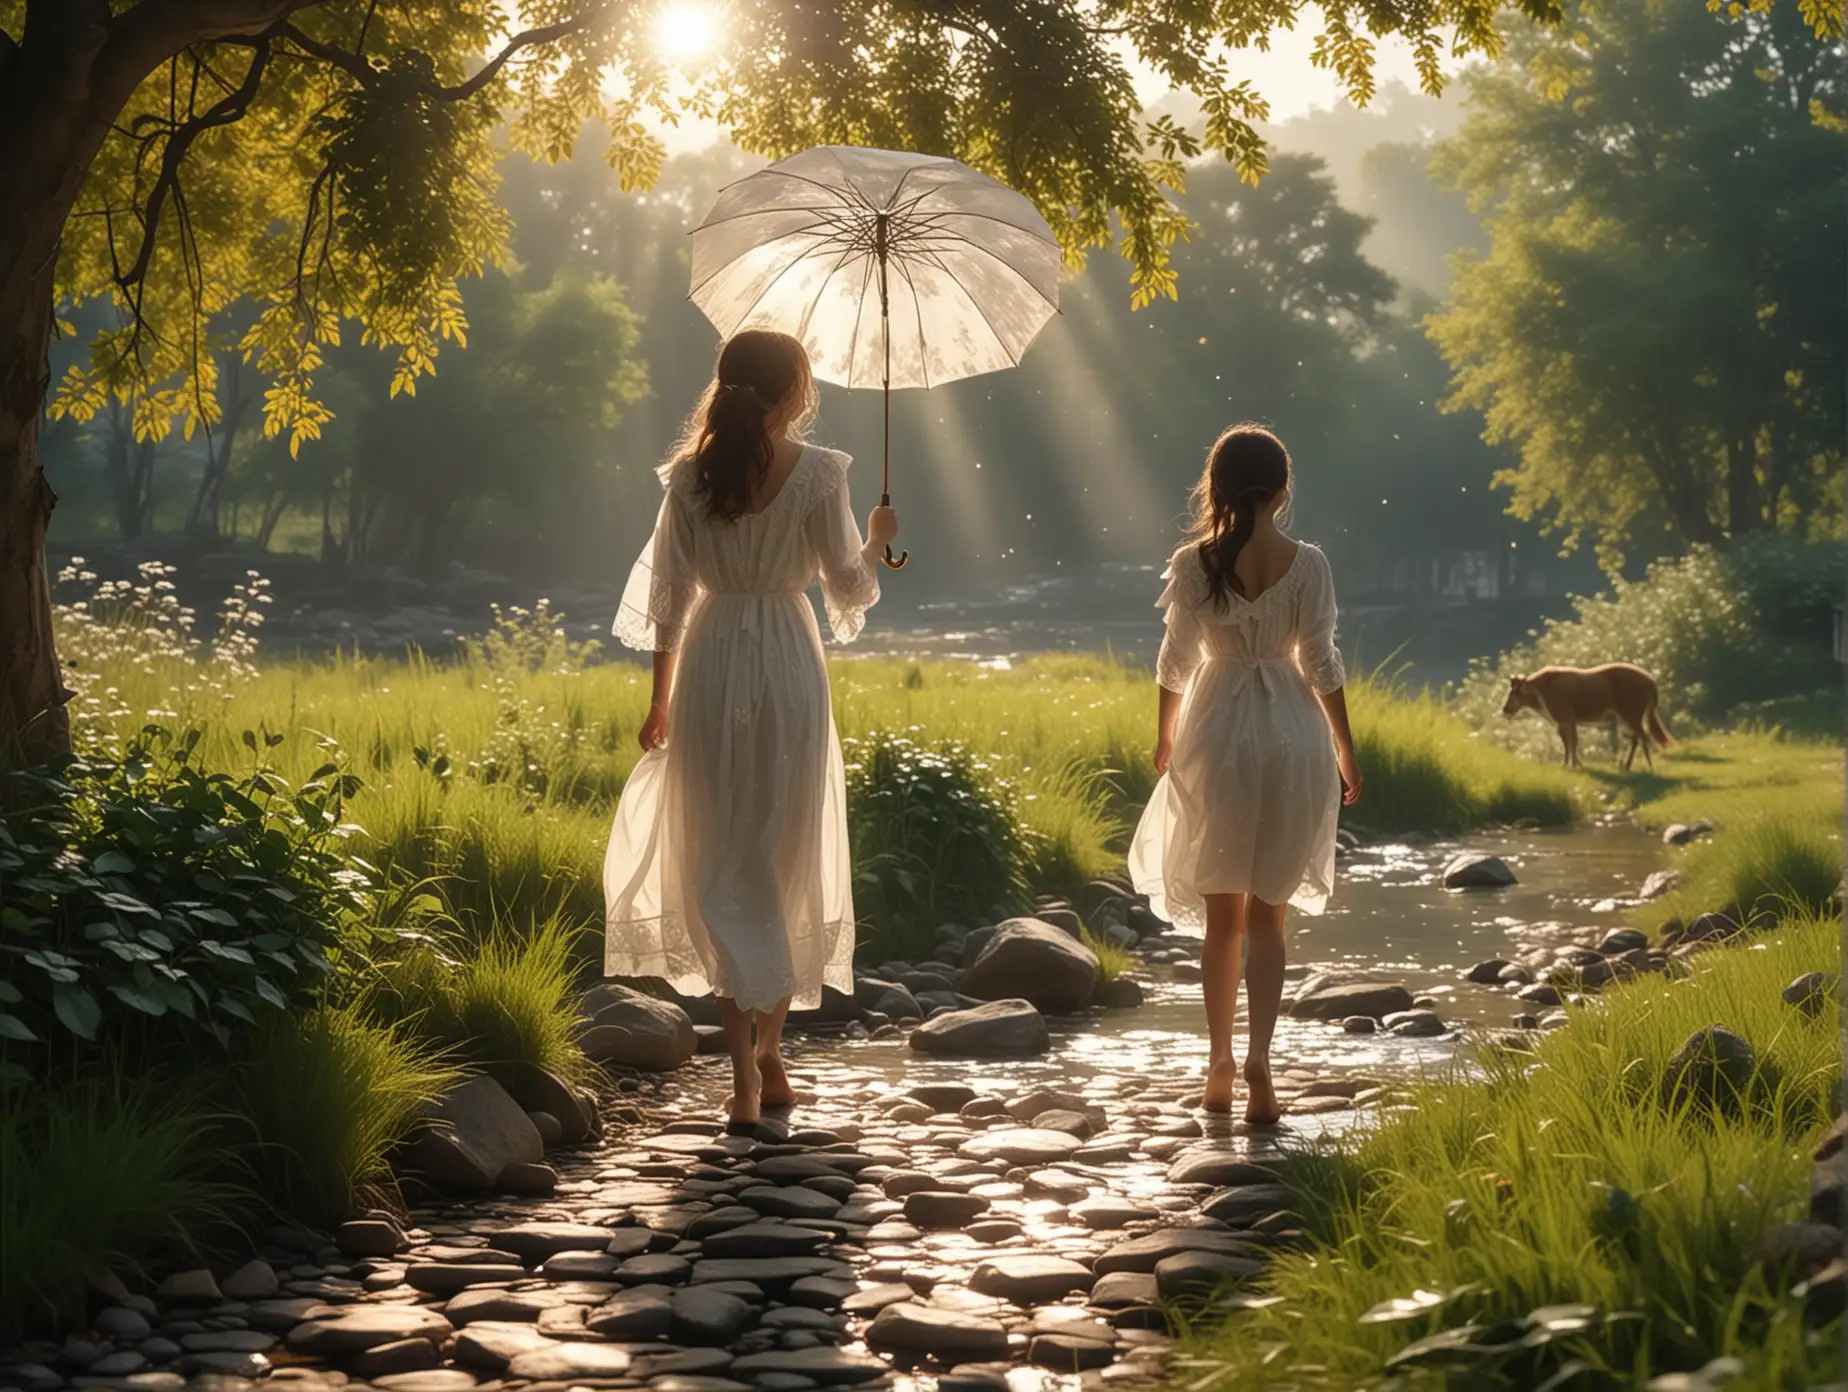 阳光透过树叶洒下，有清澈的河流，8k，青石板的街道，撑着油纸伞高挑穿着白色华丽裙子的女孩，各种动物在草原上奔跑嬉戏，有独特的光影效果，8k